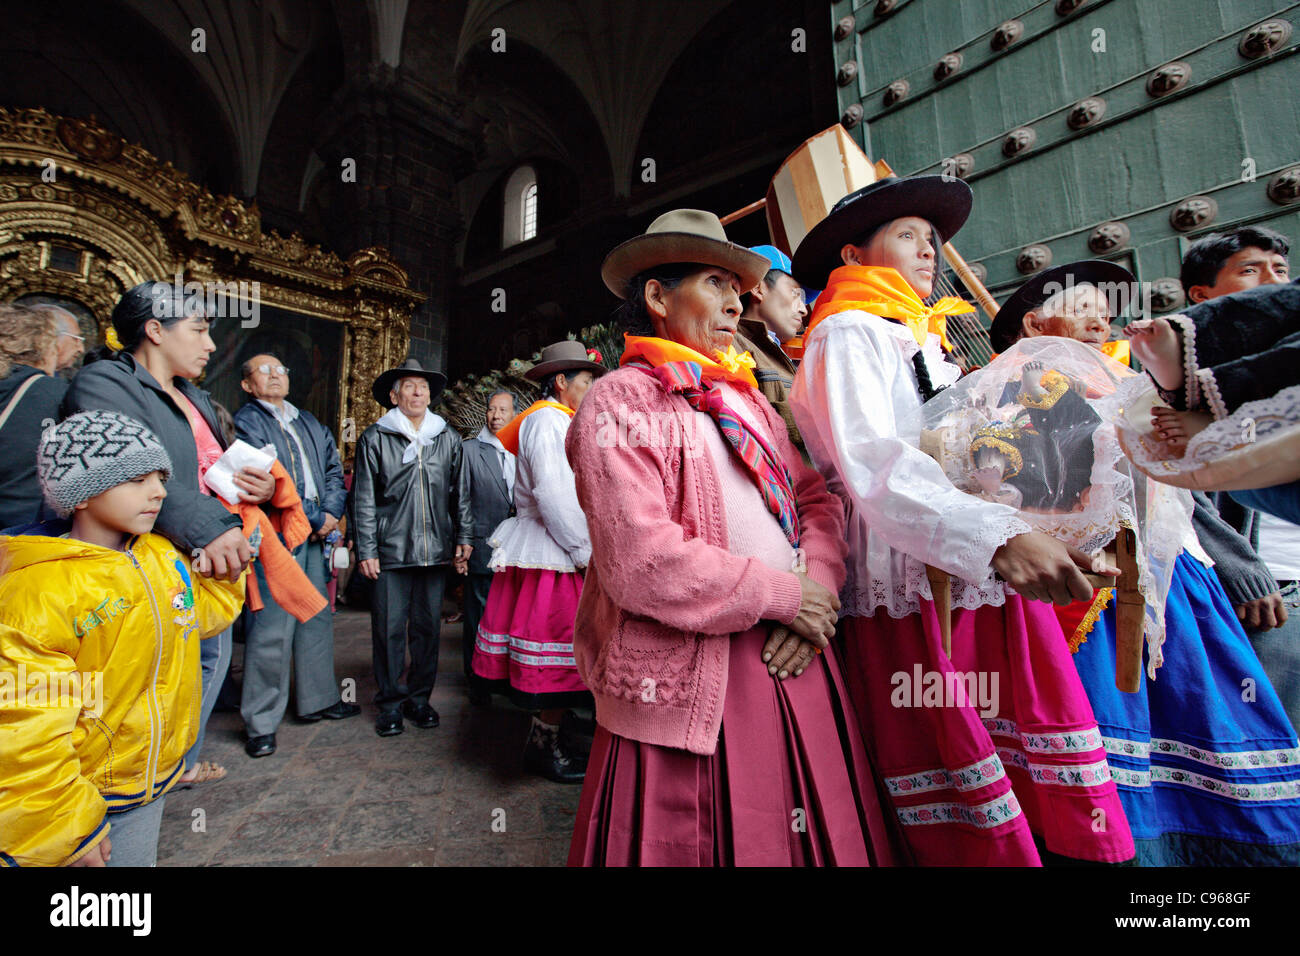 Festivités de Noël dans la cathédrale de Saint-Domingue à Cuzco, Pérou. Banque D'Images